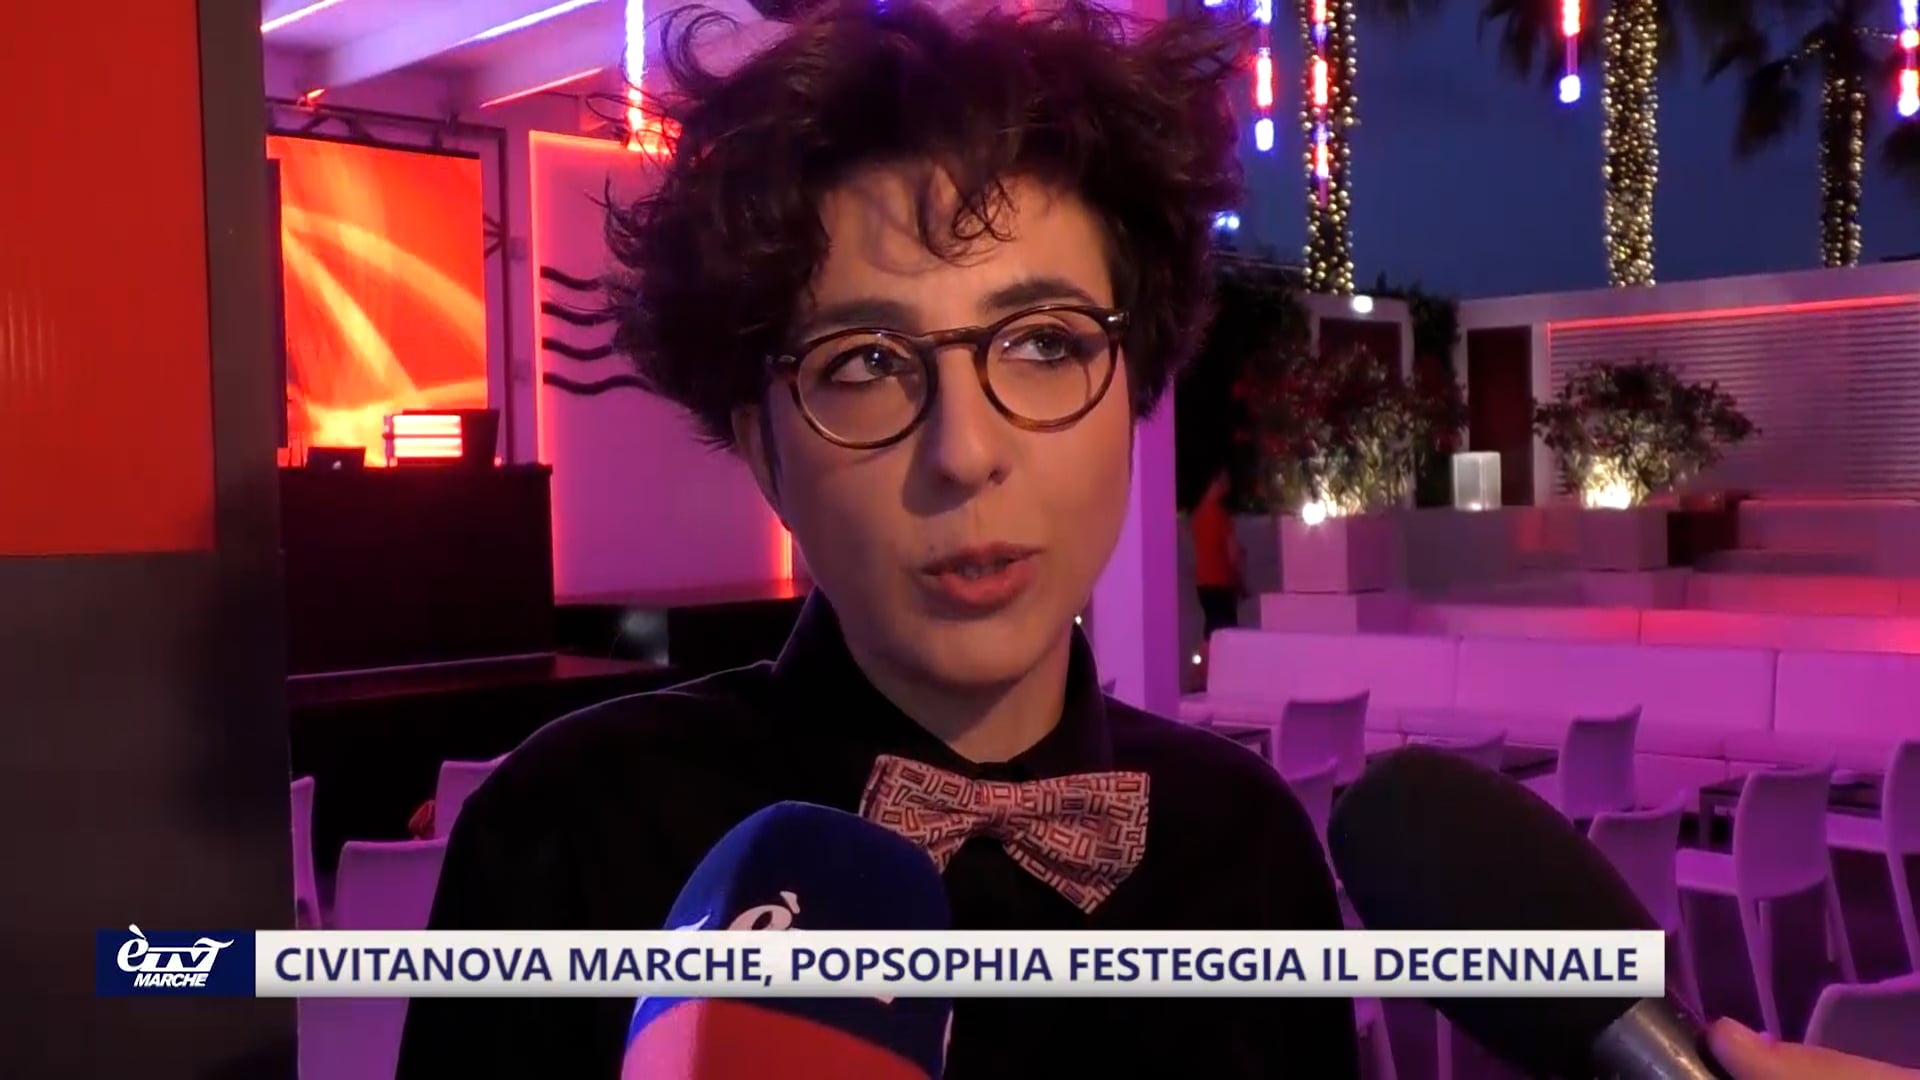 Civitanova Marche, Popsophia festeggia il decennale